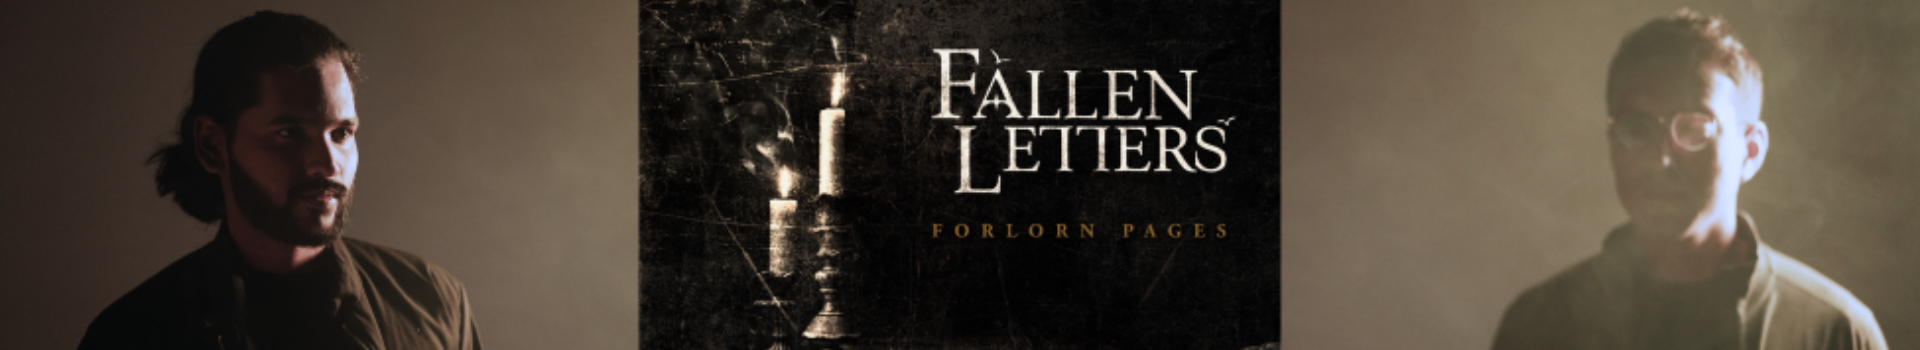 Fallen Letters - Official Merchandise